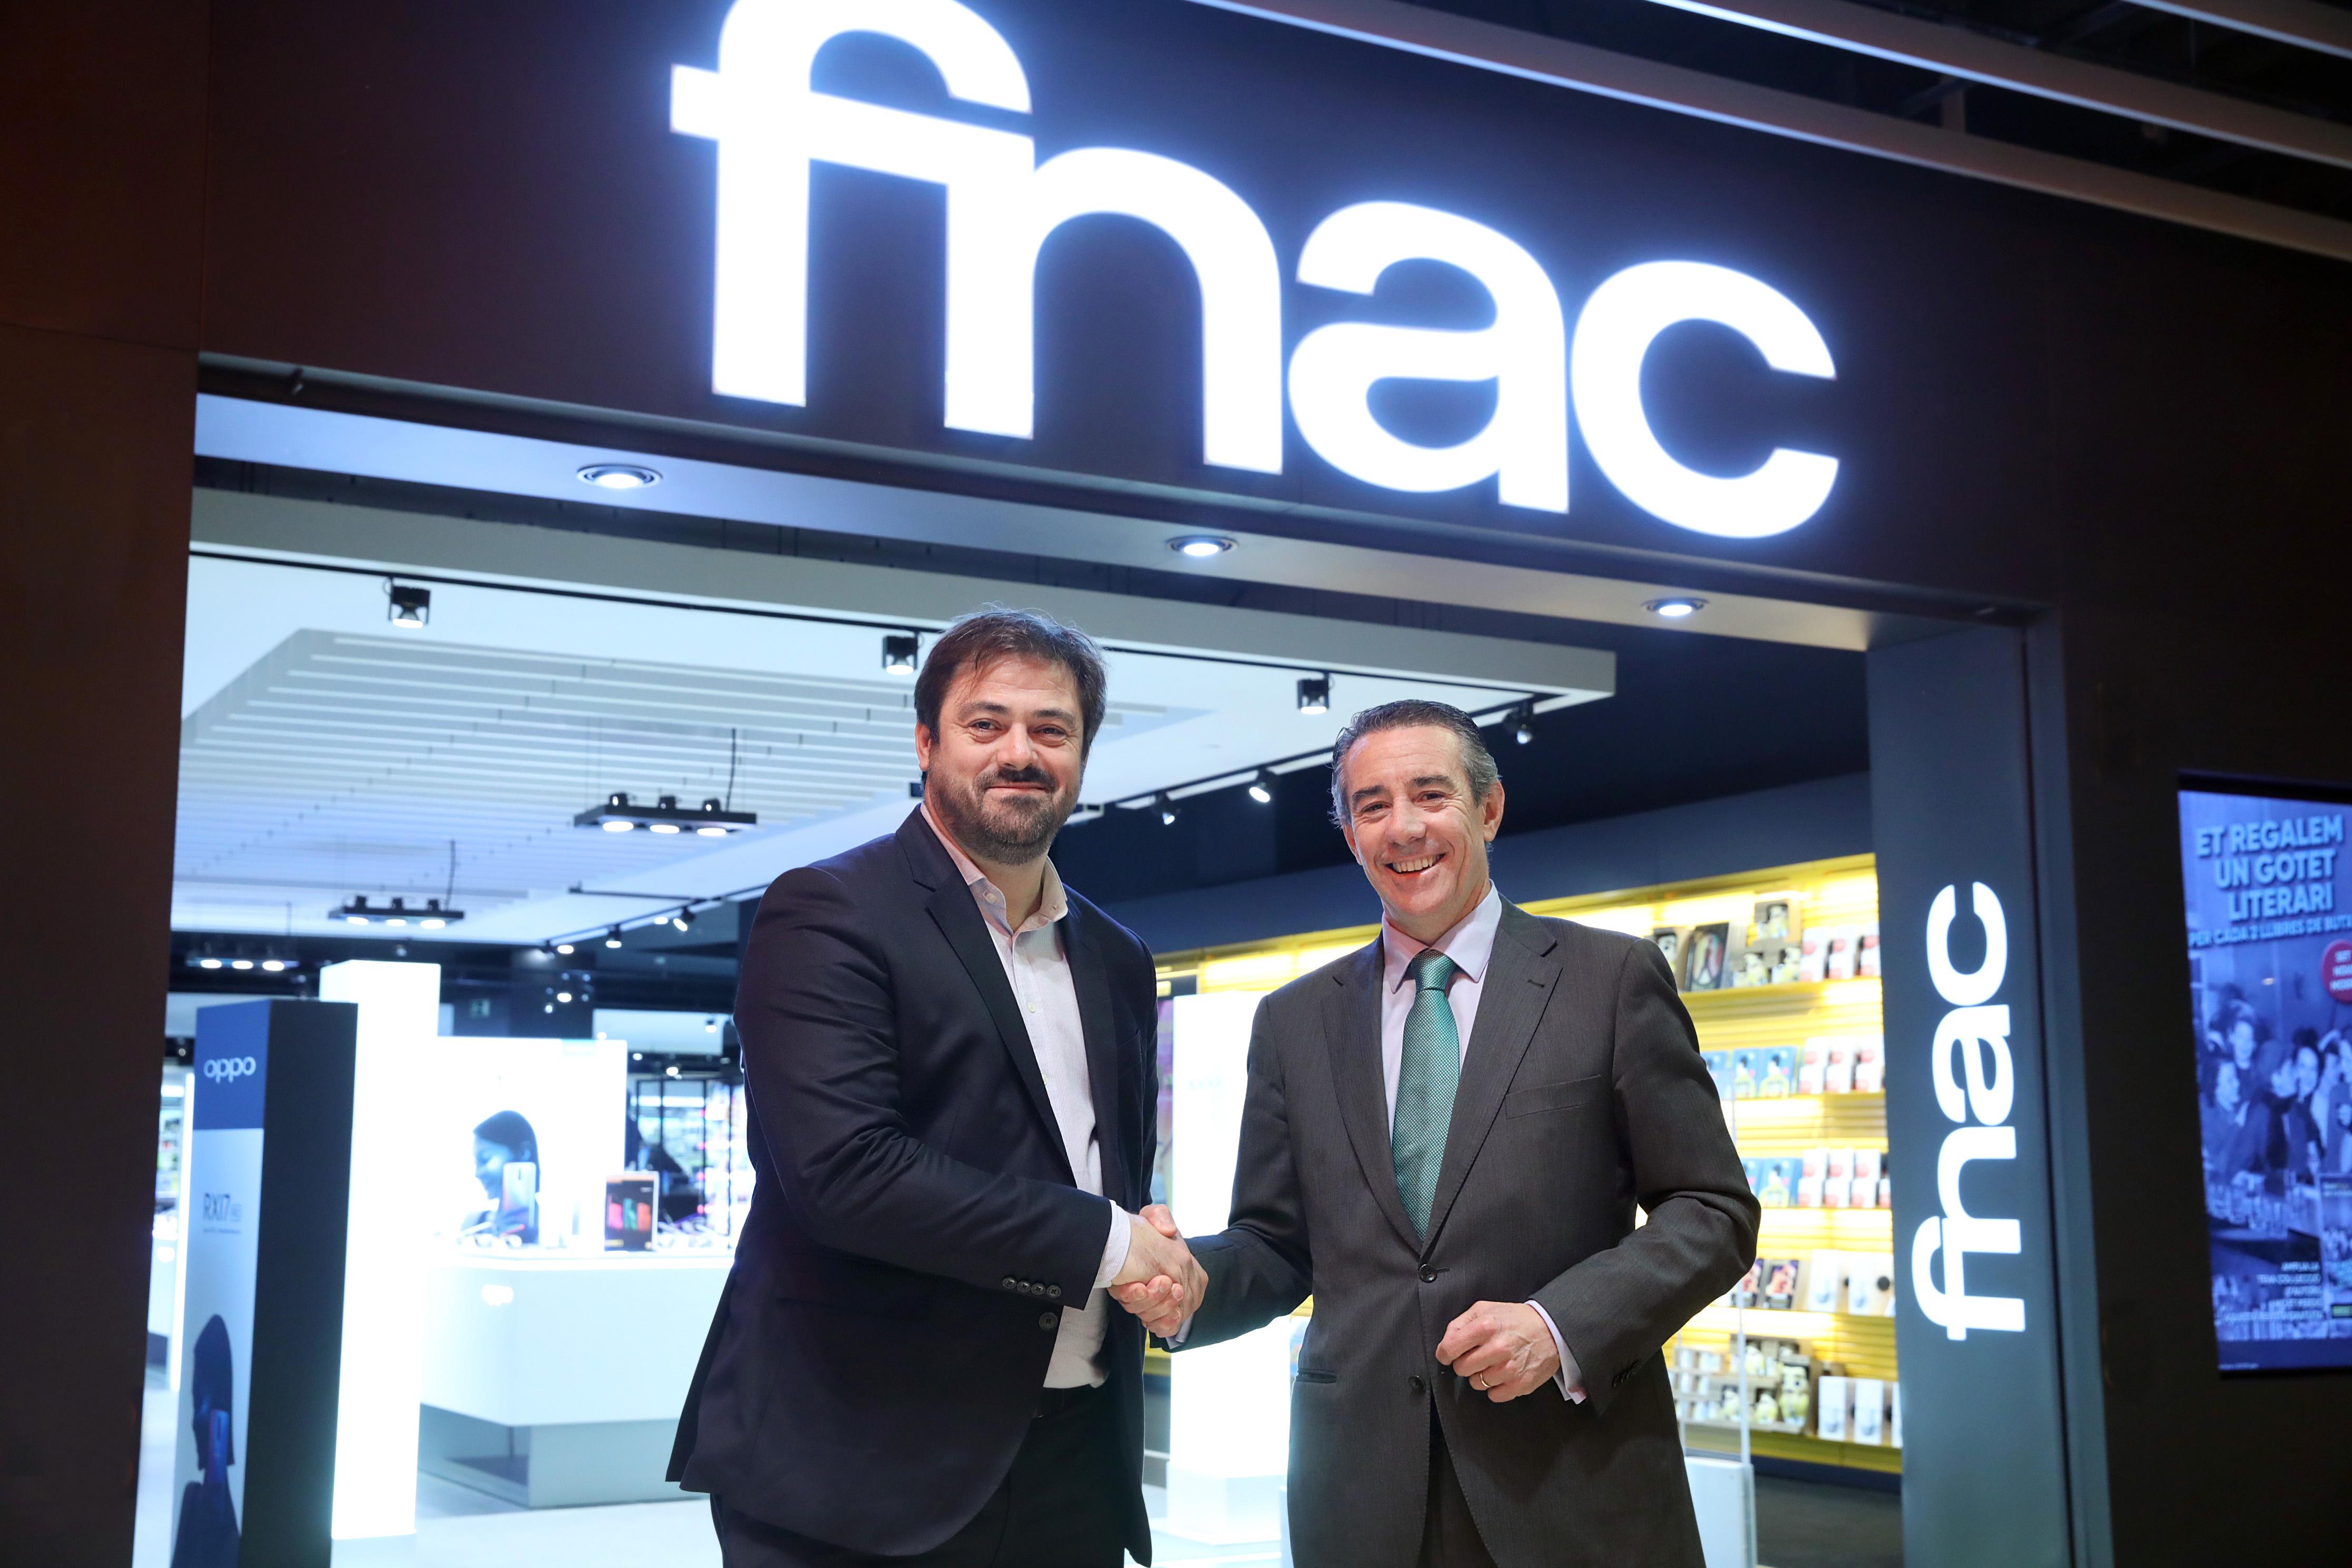 Enrique Martínez, director general del Grupo Fnac Darty, y Juan Antonio Alcaraz, director general de CaixaBank